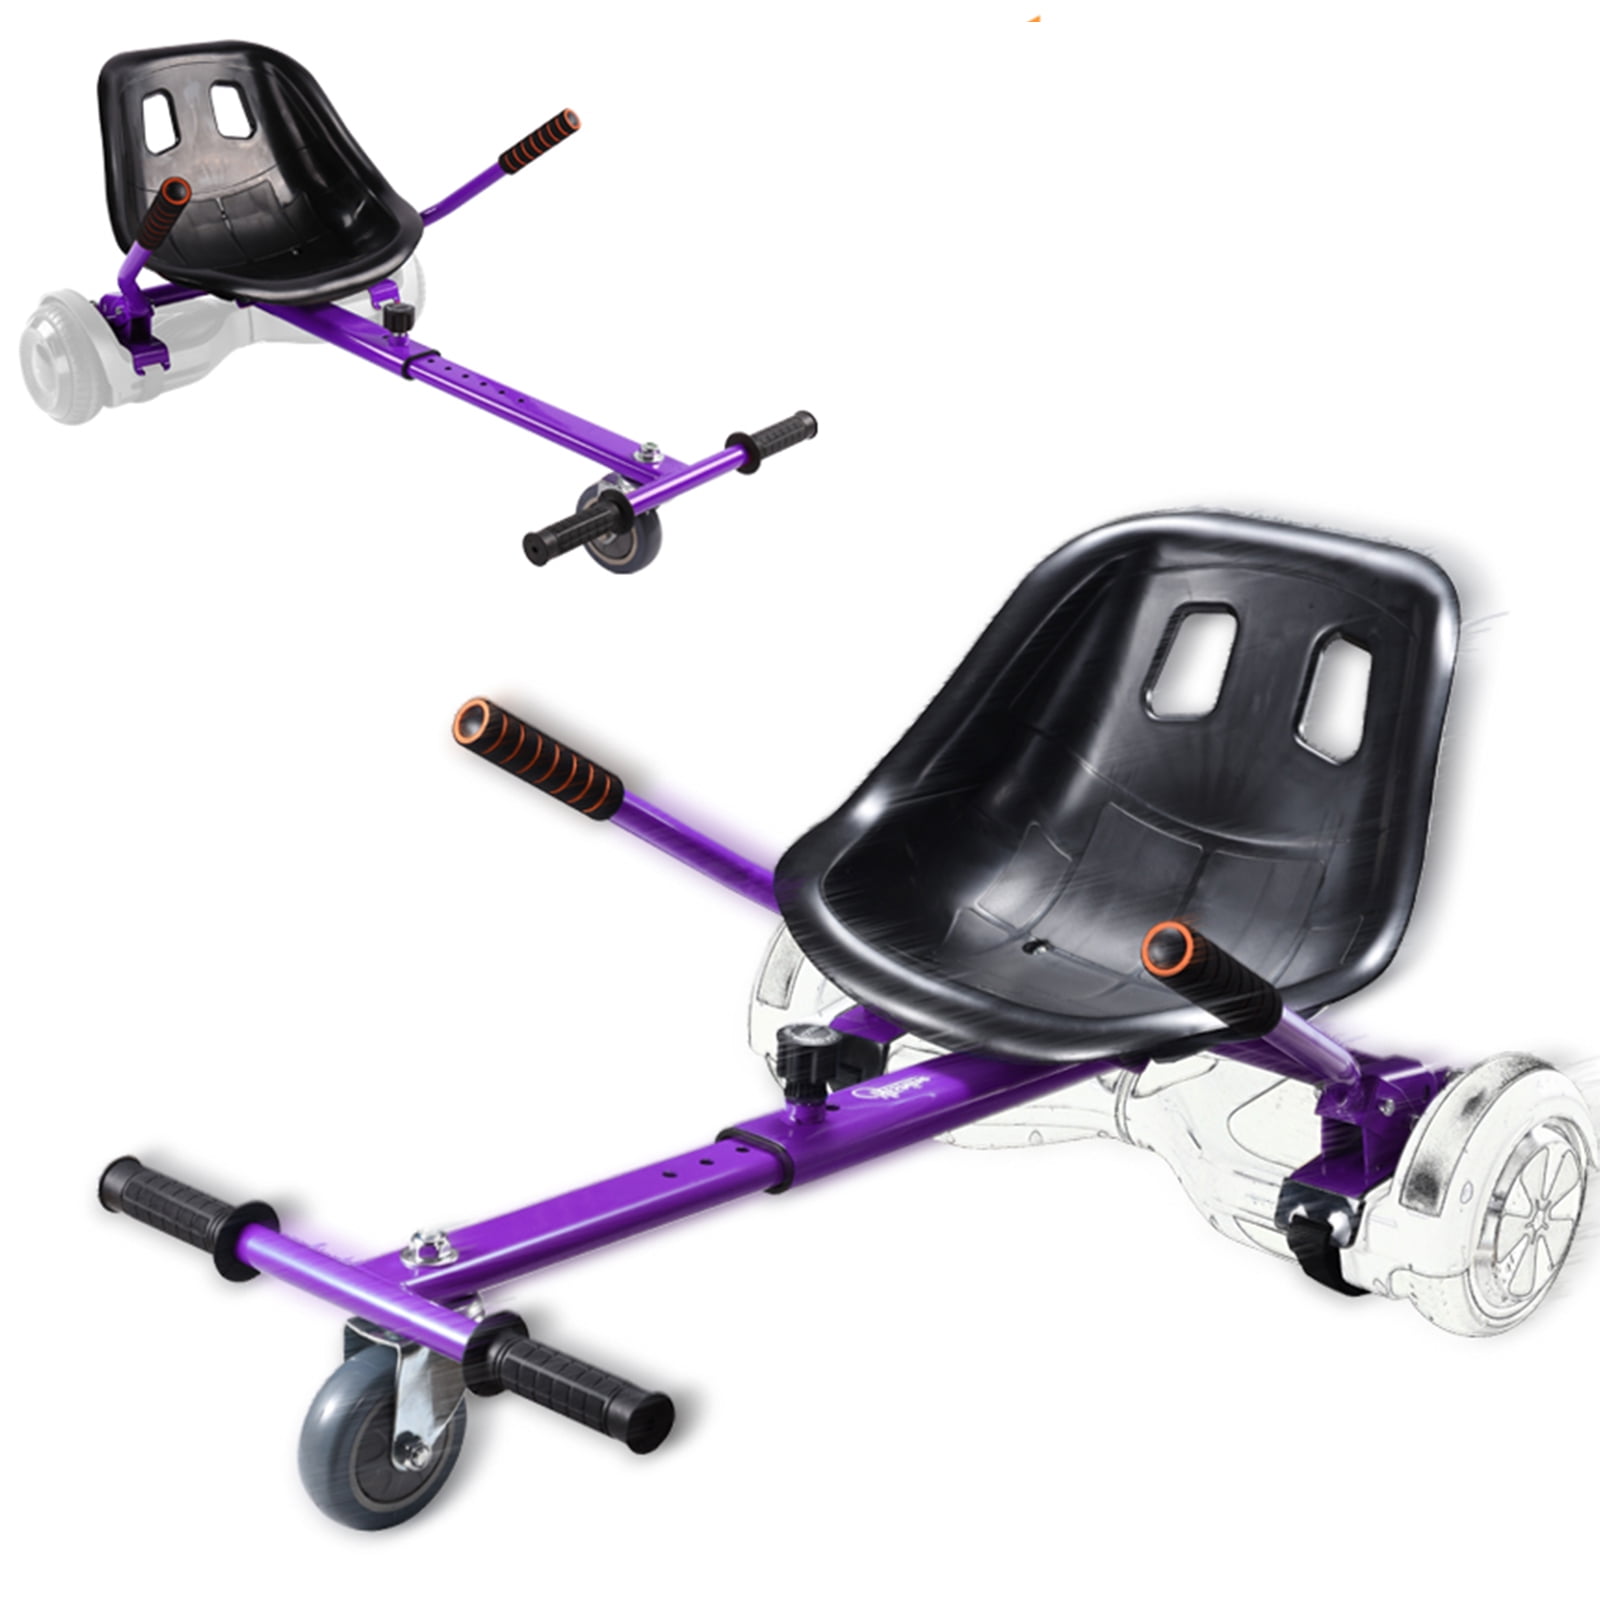 Go Kart Hoverkart Seat For Electric Scooter Adjustable Hover Kart Hoverboard UK 